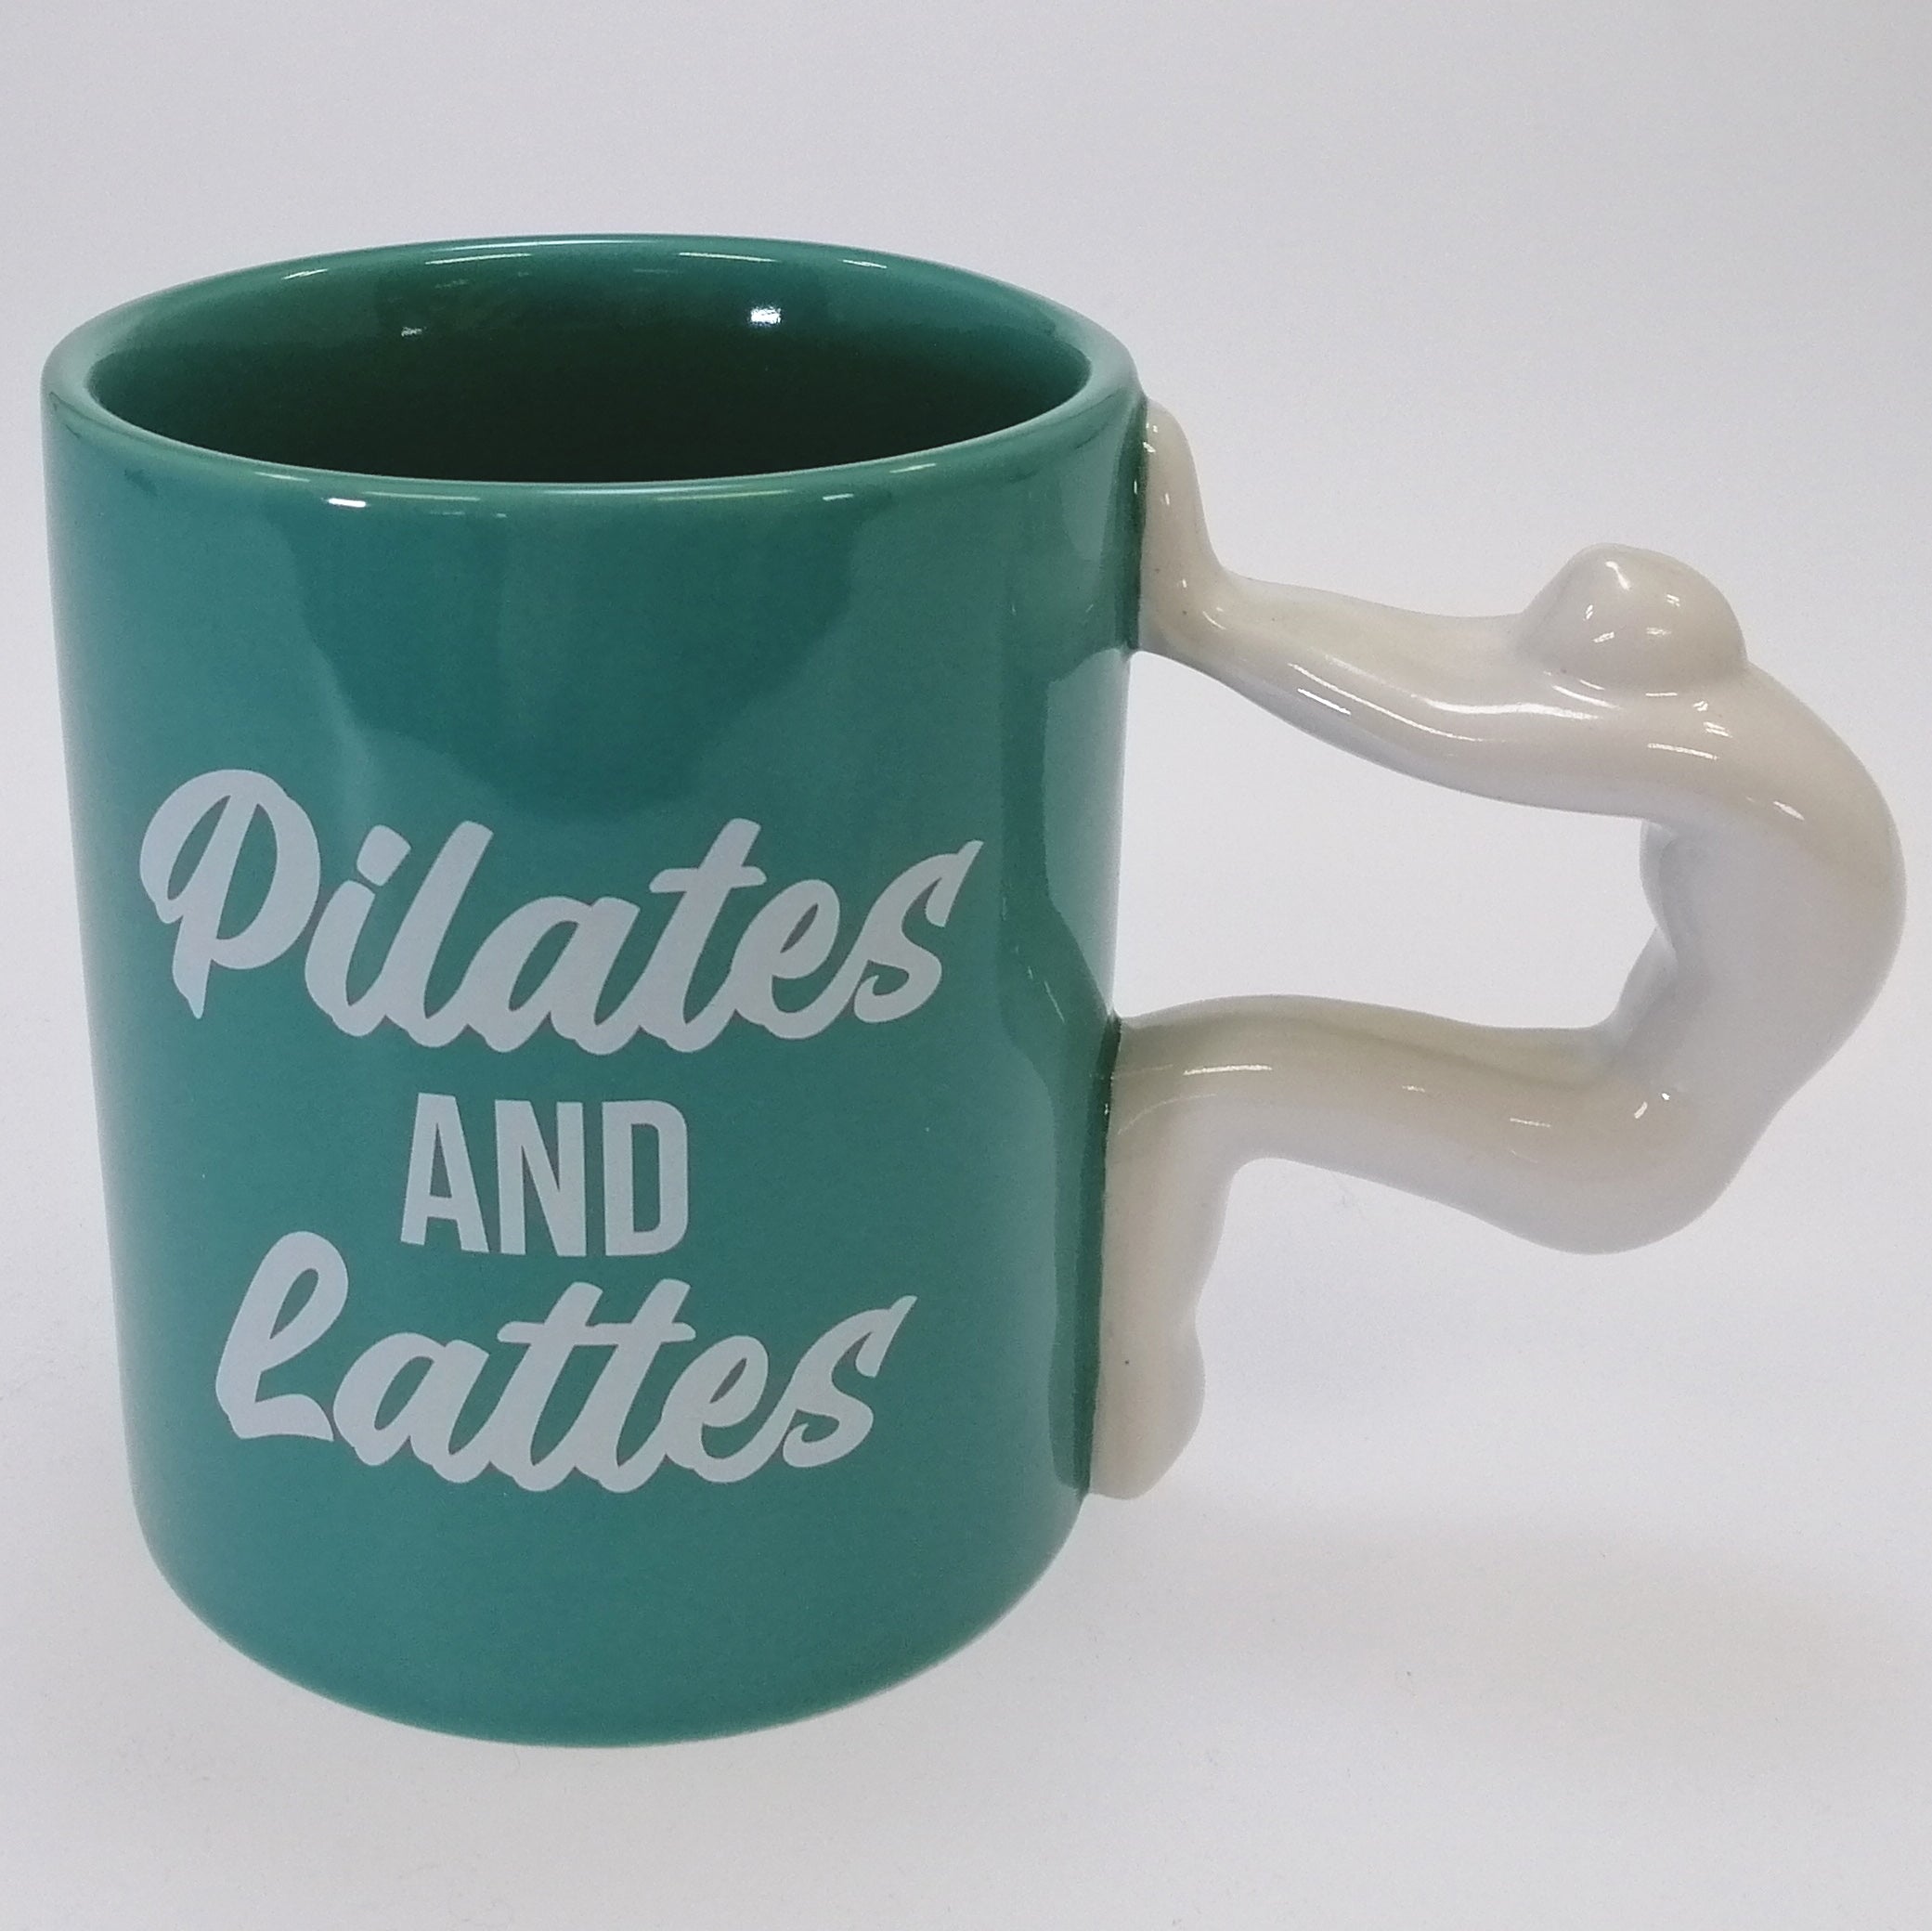 Pilates Mug "Pilates and Lattes" - Boxed Mug